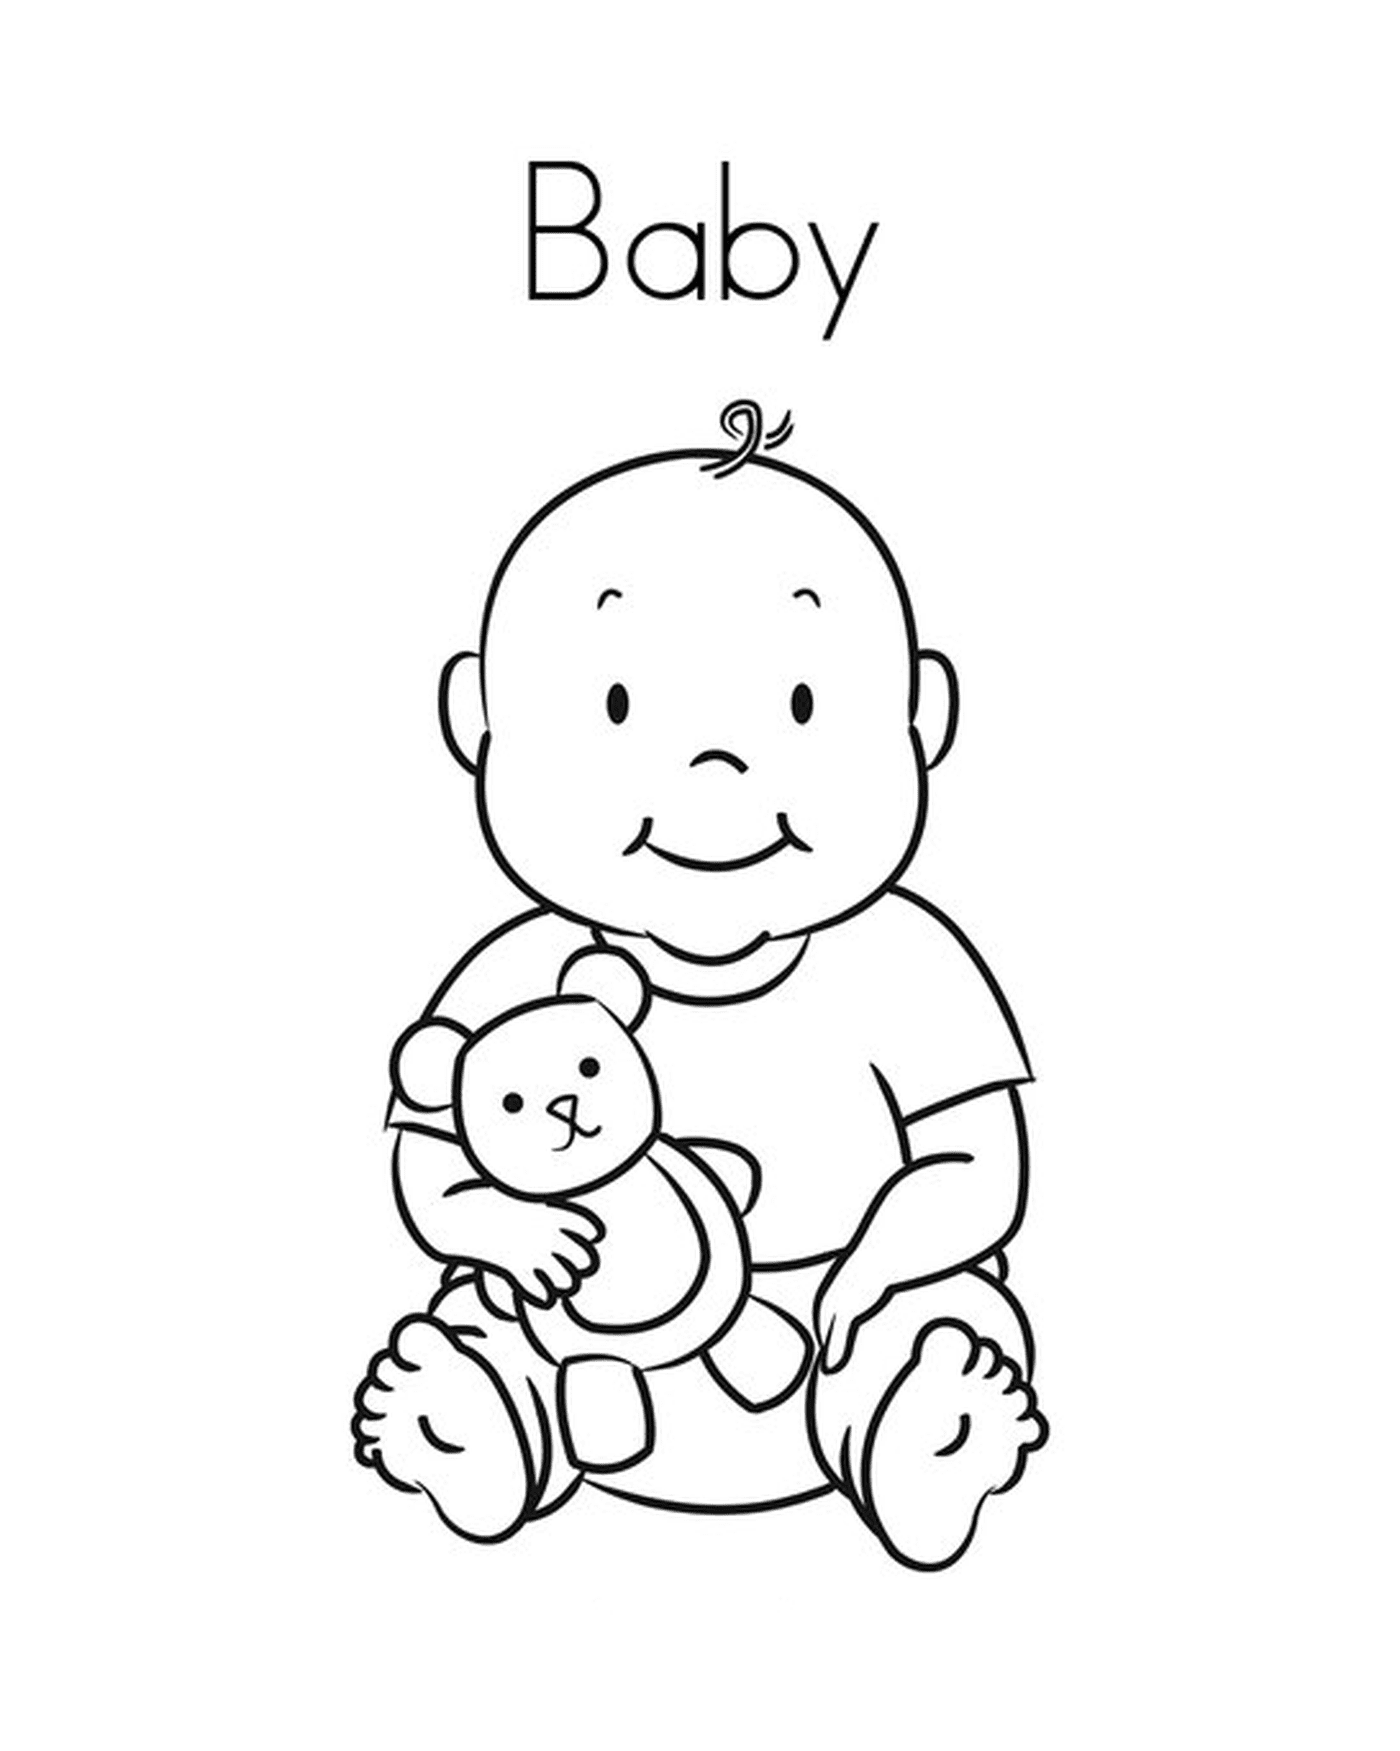  Ein Baby, das einen Teddybär hält 